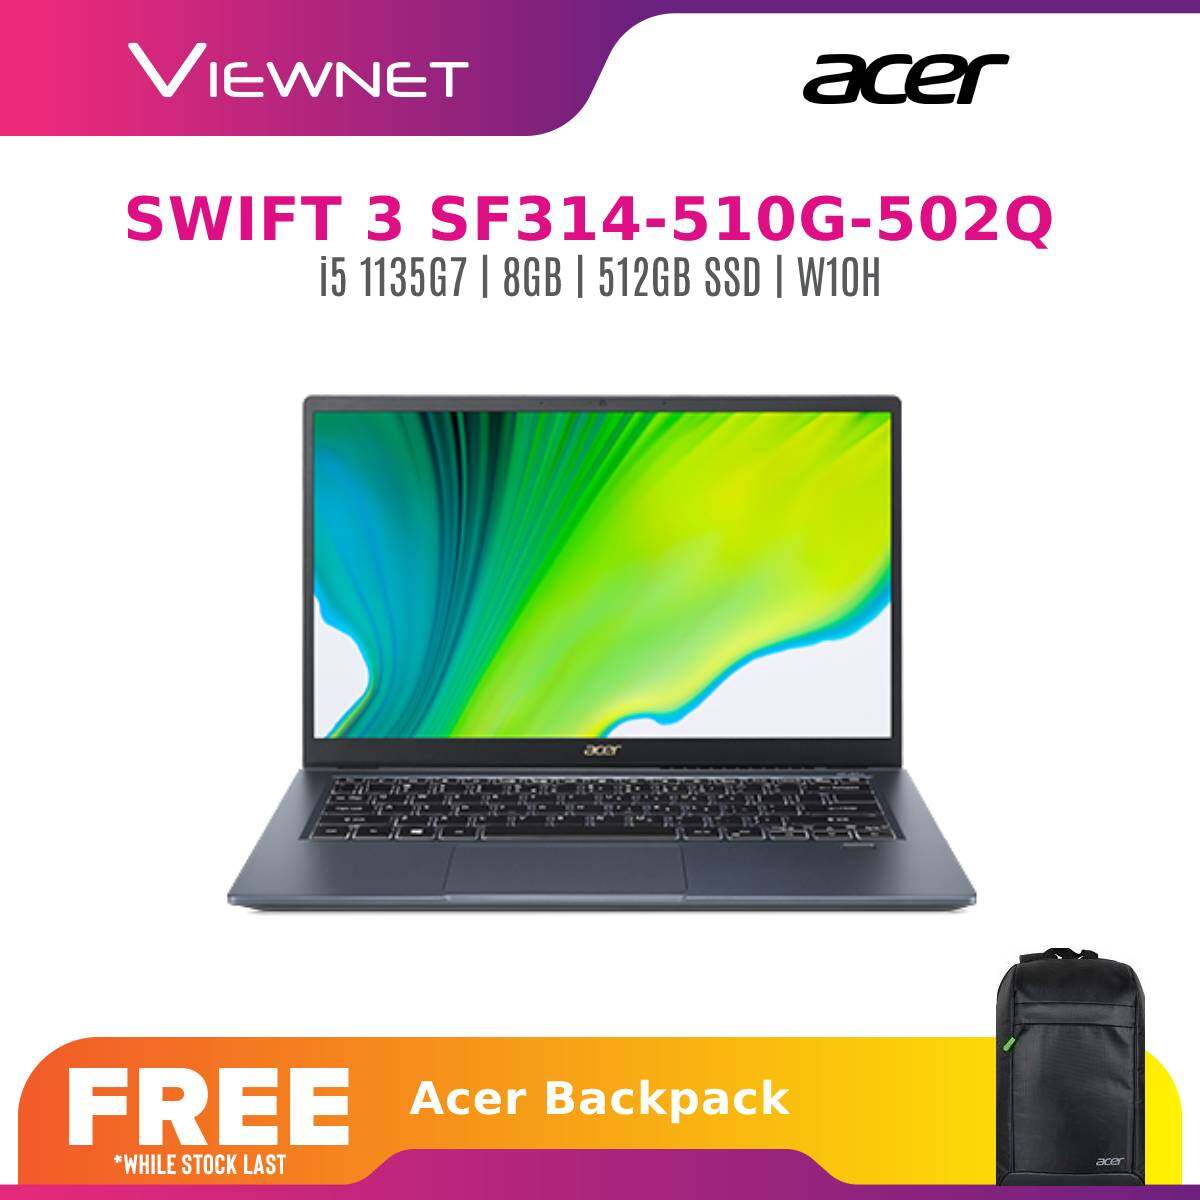 ACER SWIFT 3X SF314-510G-502Q 14